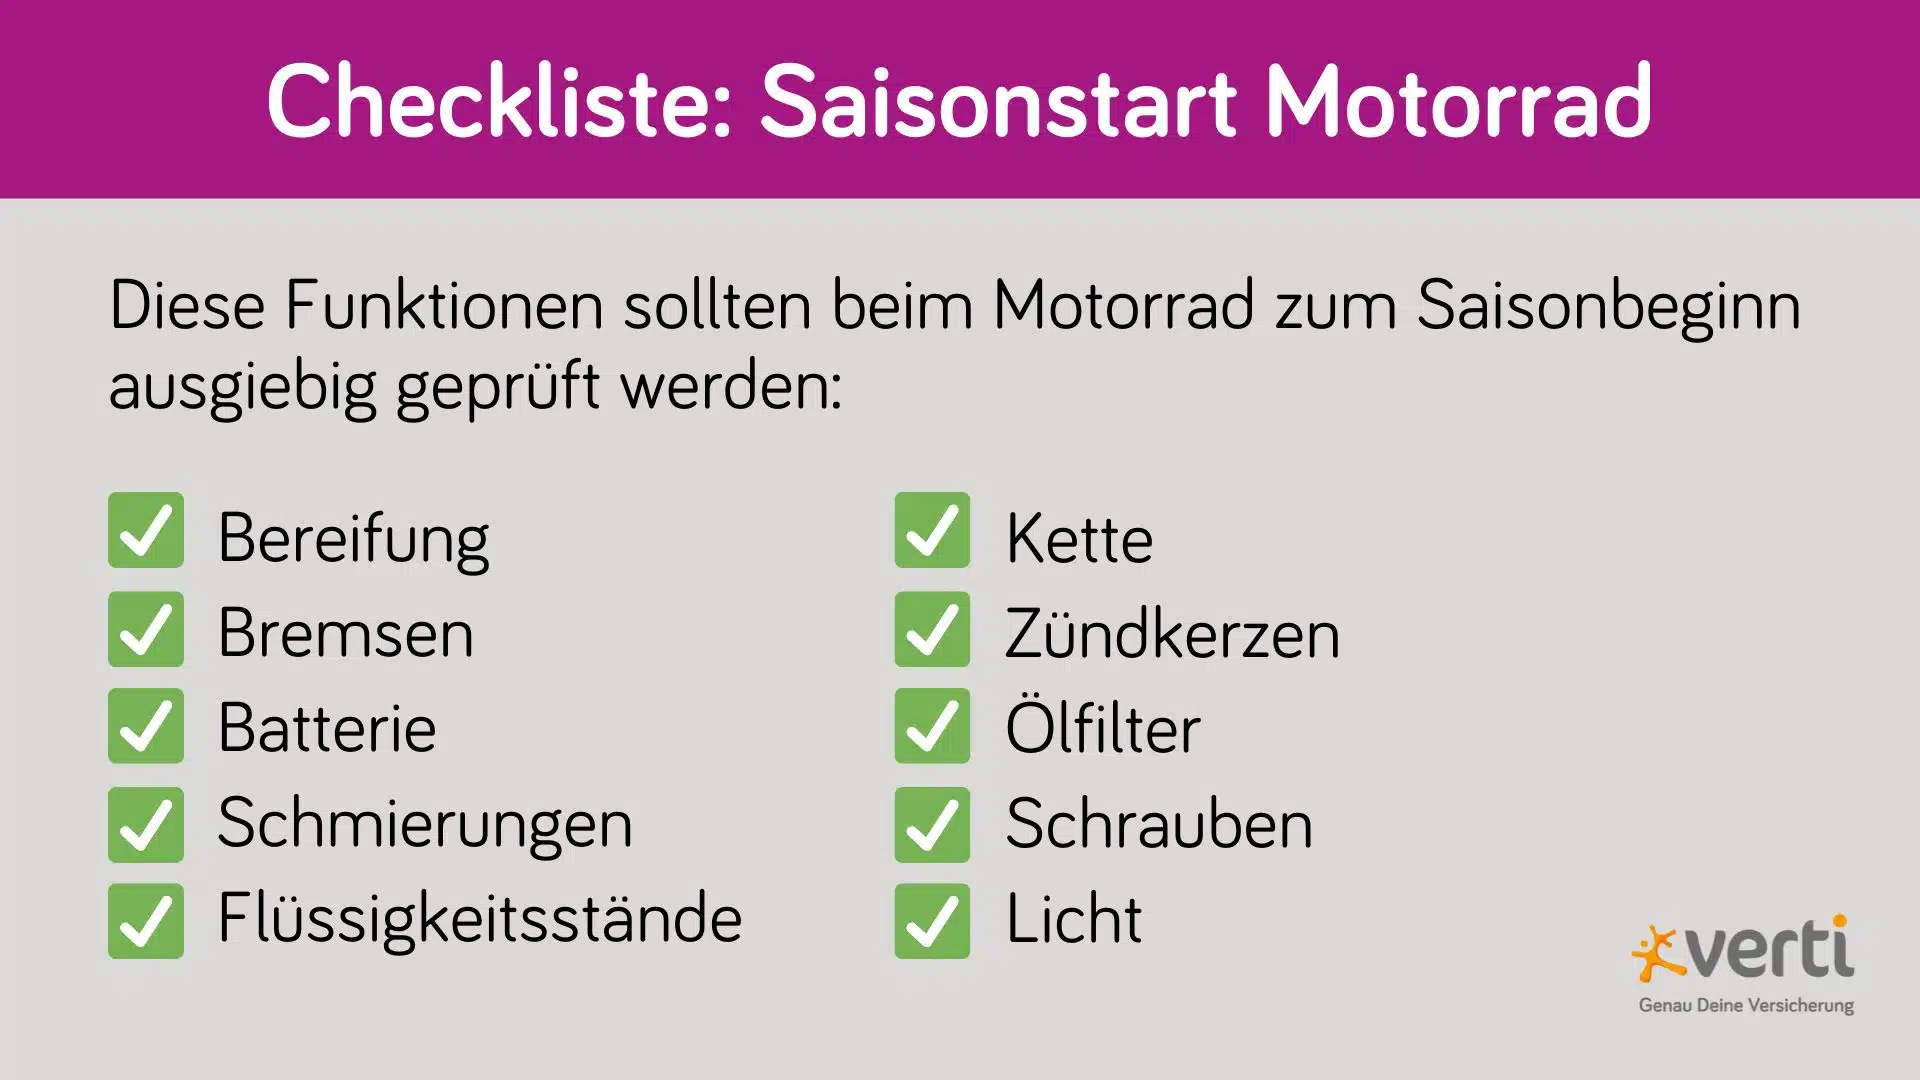 Grafik Checkliste Motorrad Saisonstart